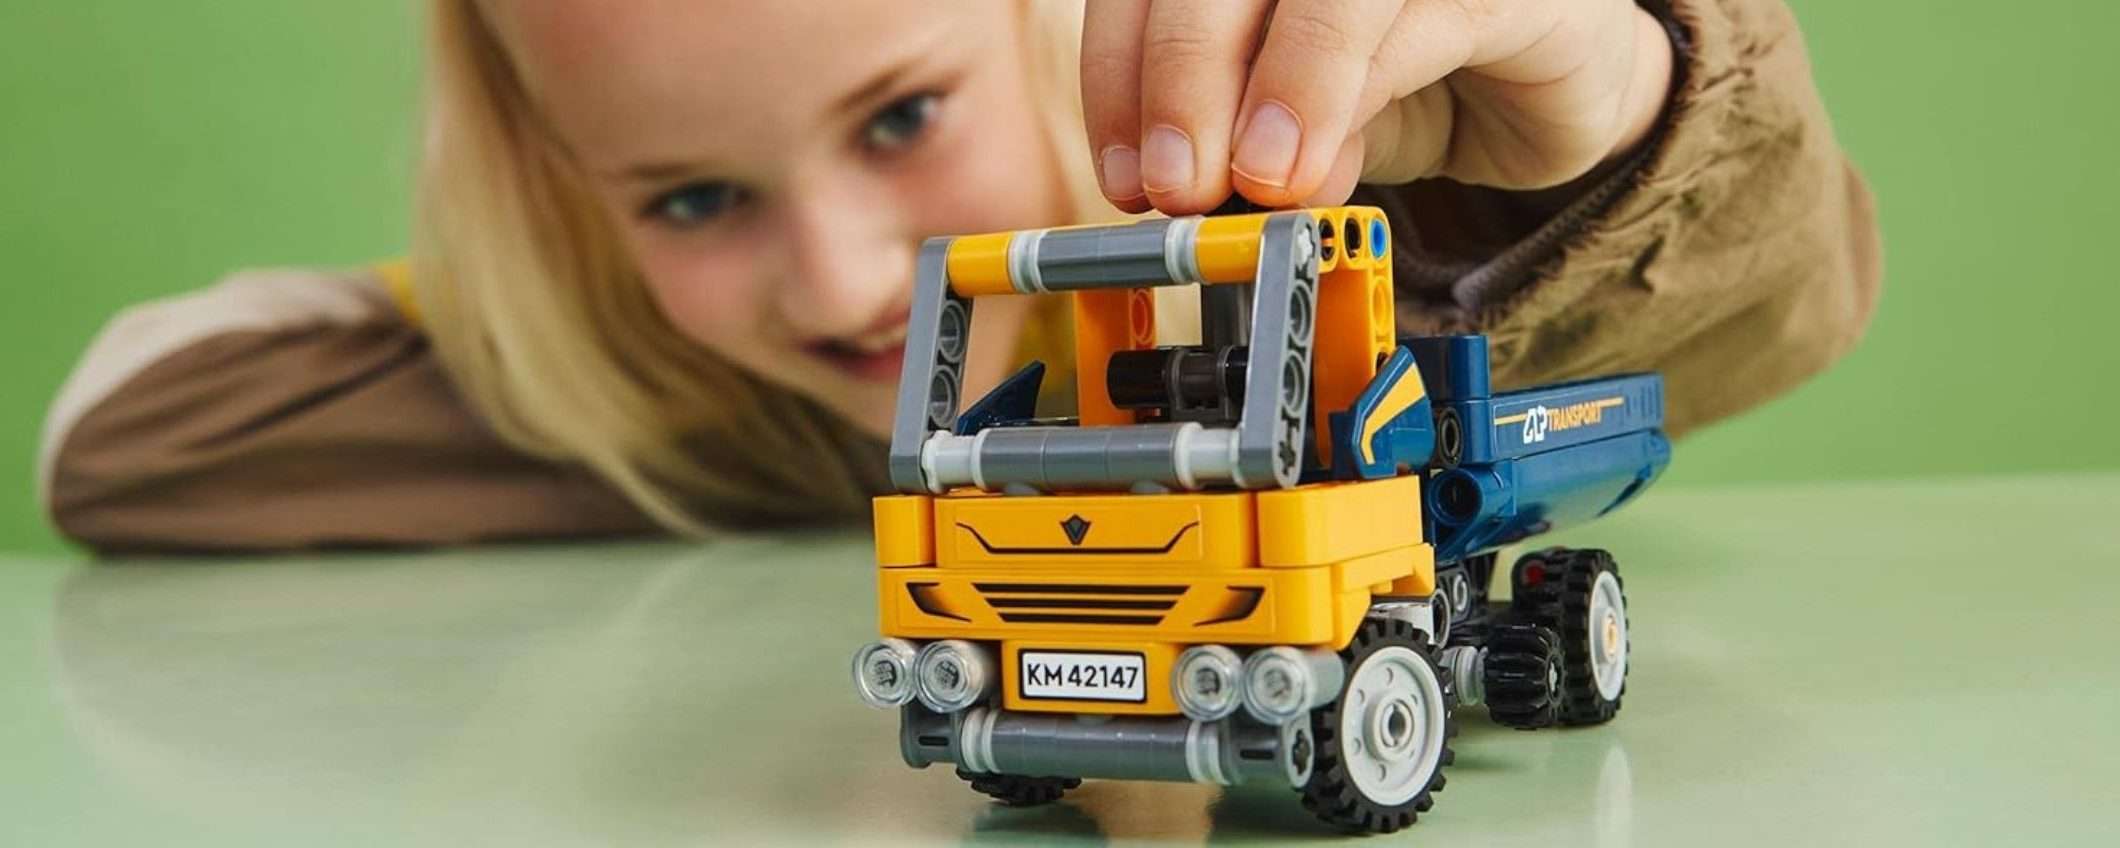 Il set LEGO Camion Ribaltabile 2-in-1 è in offerta su Amazon a 7,99 euro